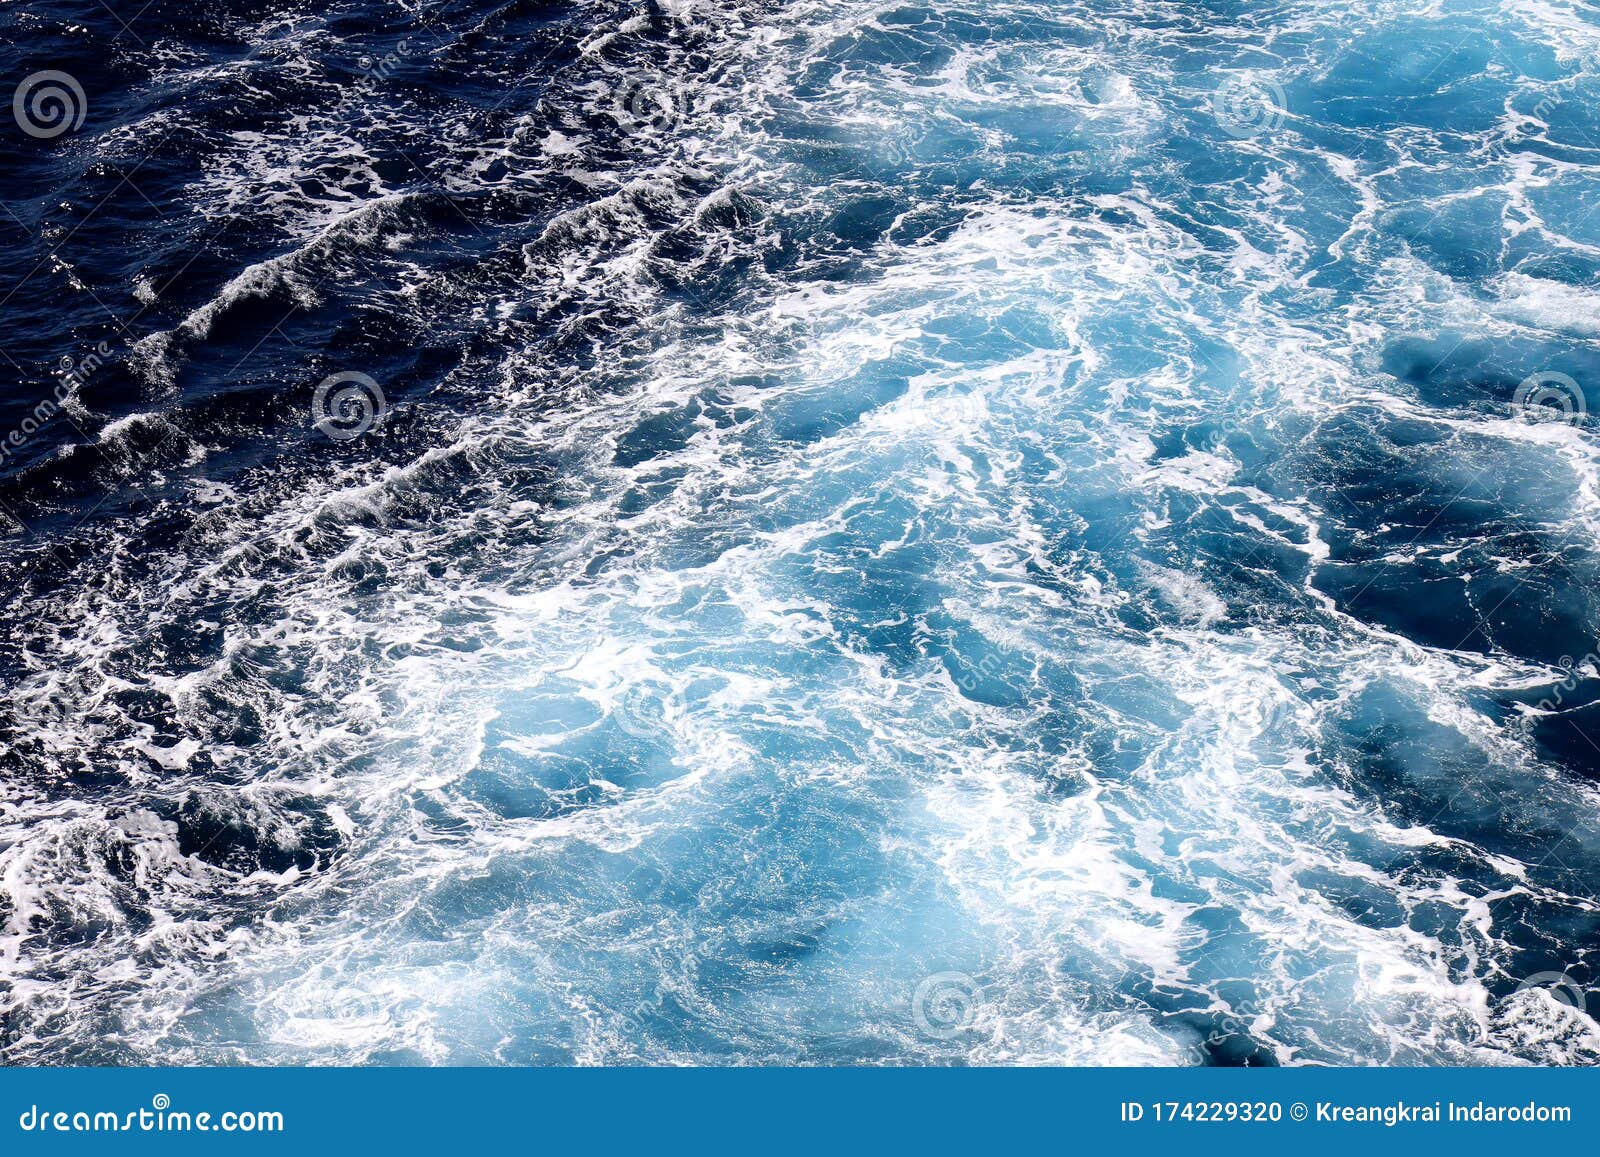 海浪壁纸 深蓝色水和海泡从空中看 自然抽象图案背景库存照片 图片包括有海浪壁纸 深蓝色水和海泡从空中看 自然抽象图案背景